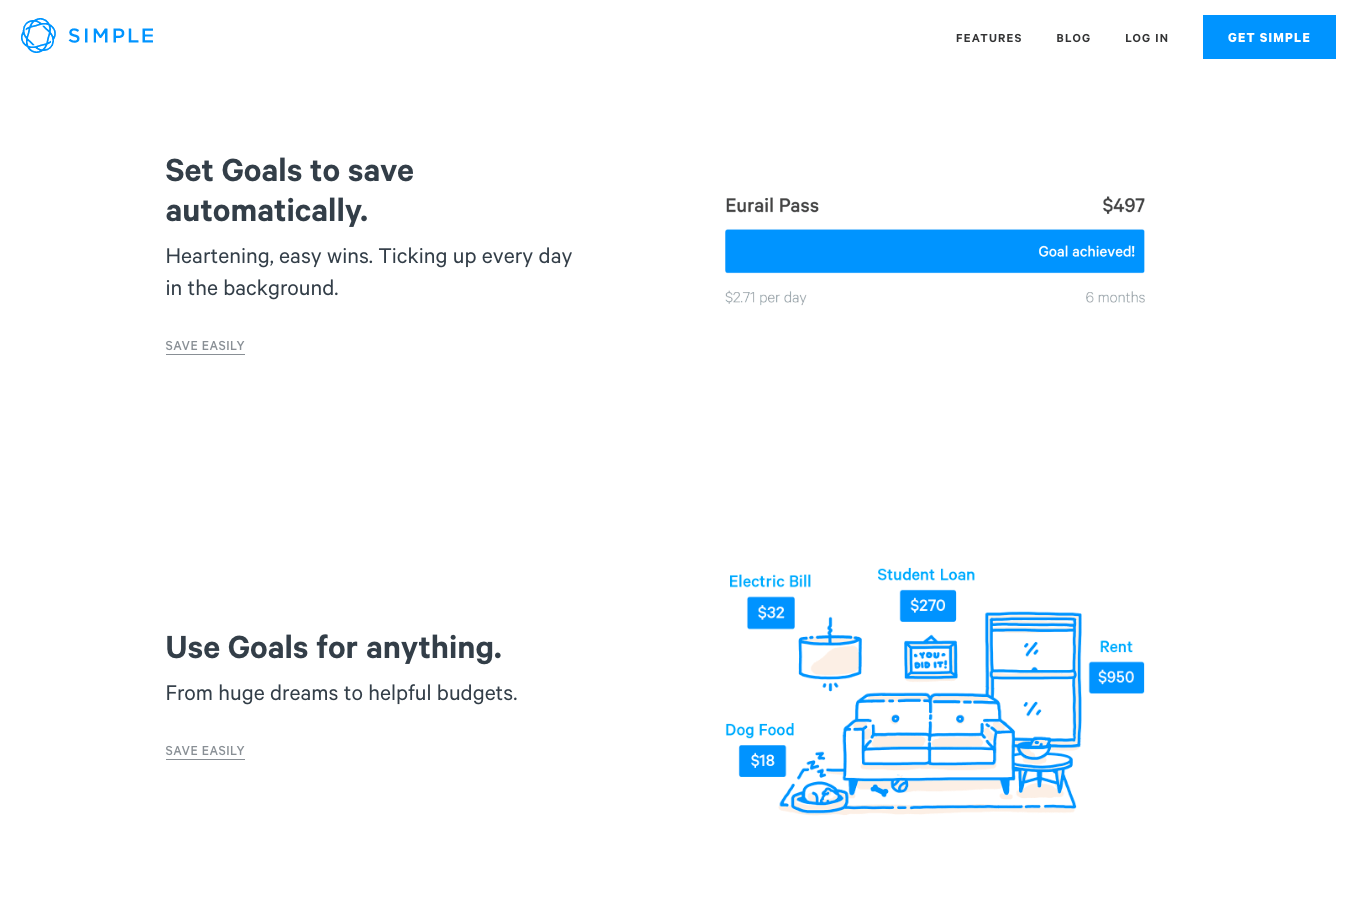 Simple Bank mostrando como pode ajudar seus clientes a poupar